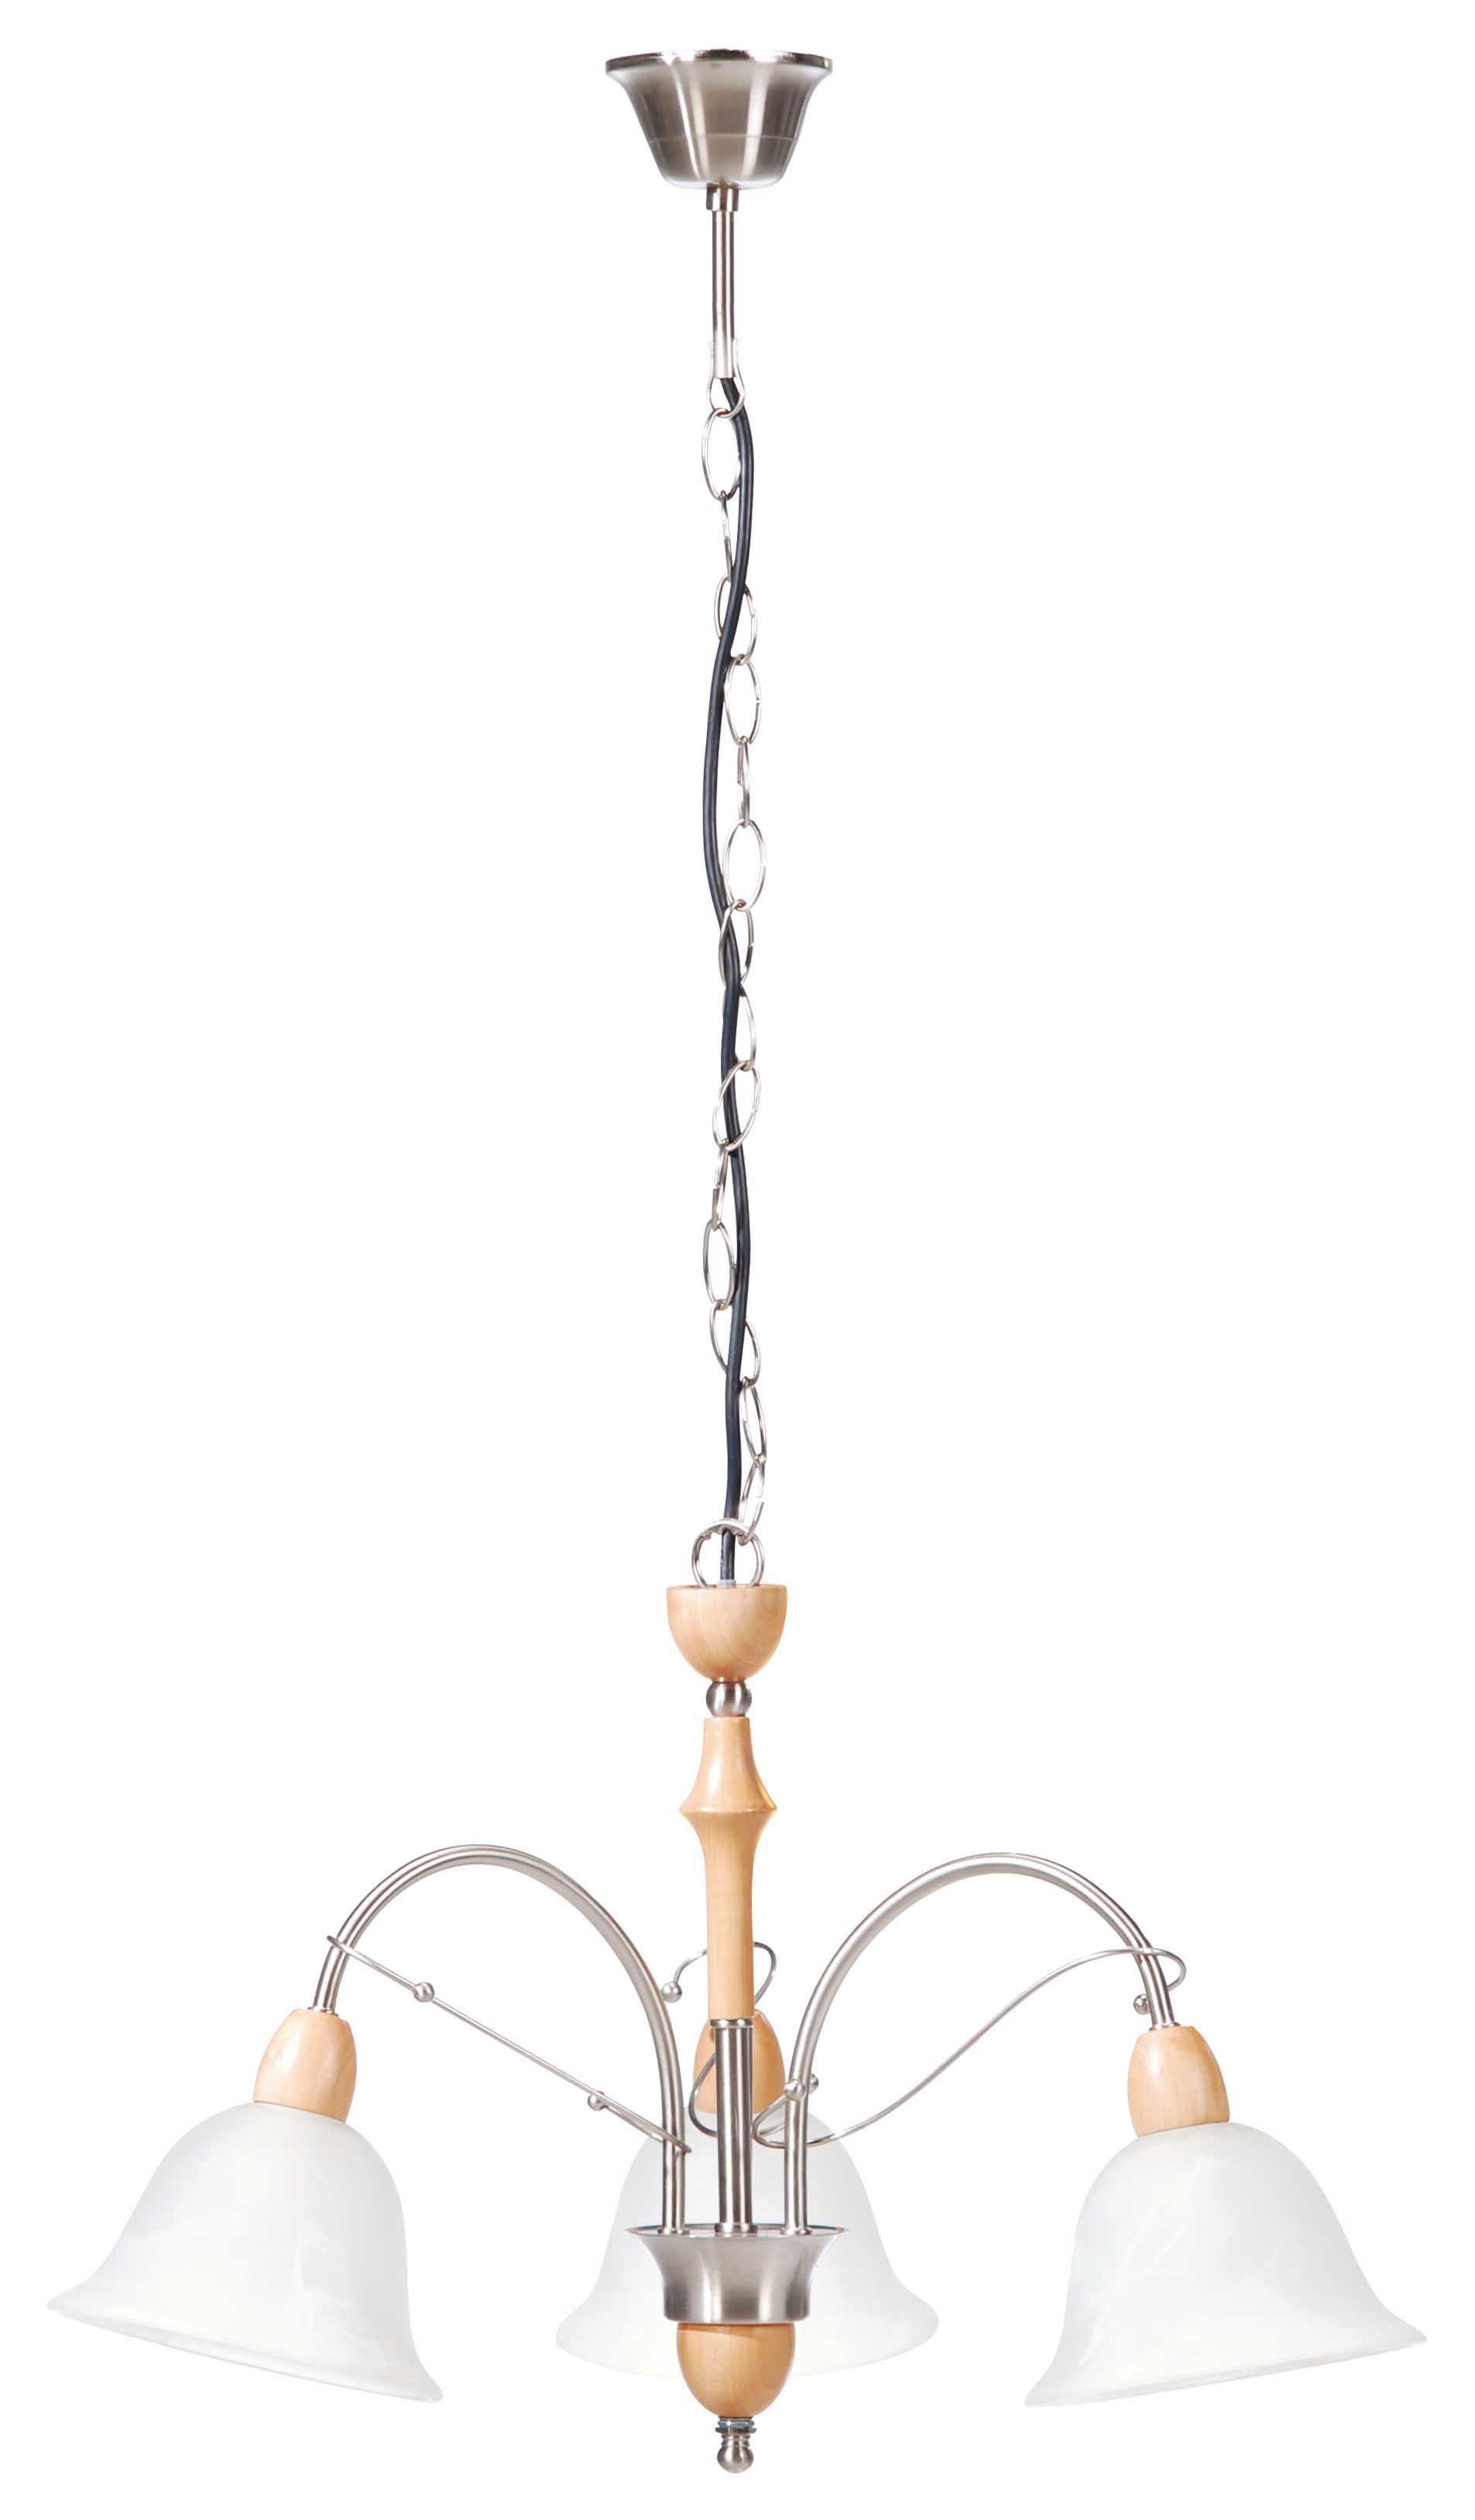 Wood & Iron Pendant Lamp / Chandelier